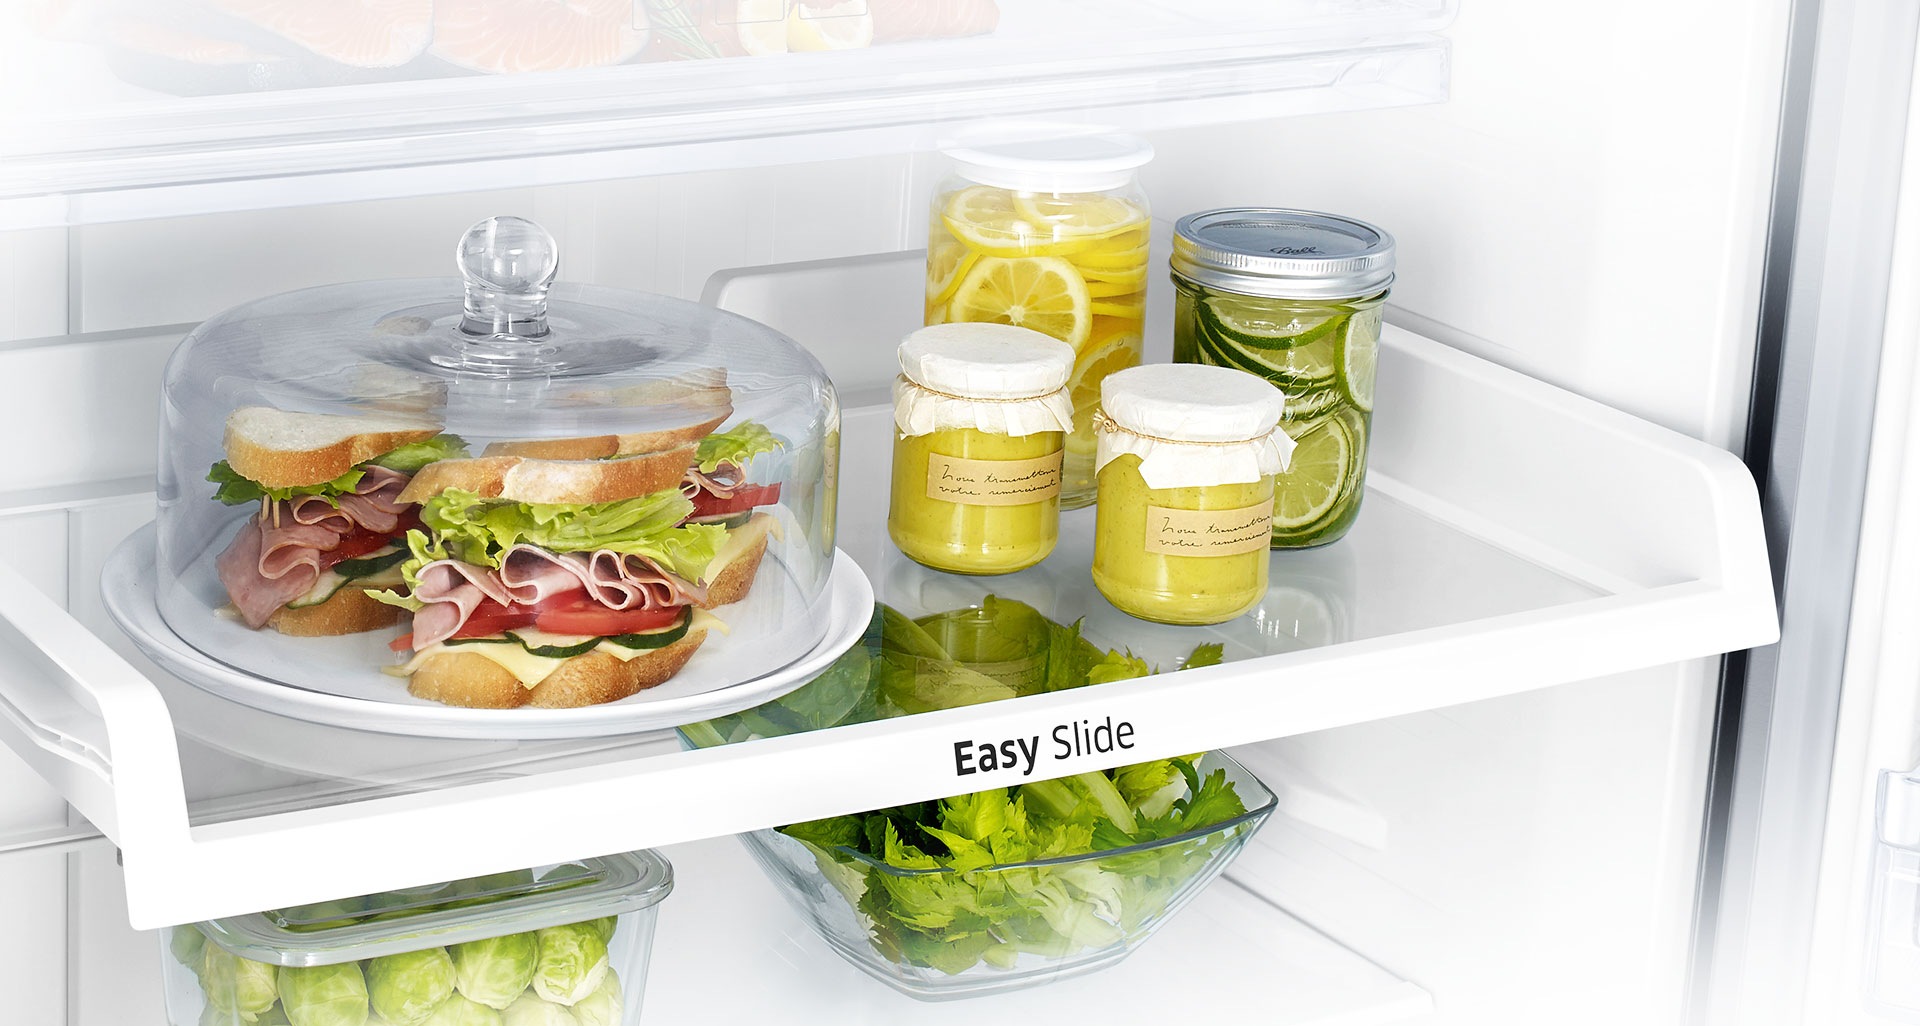 Excellente visibilité et facilité d’accès aux aliments rangés au fond du réfrigérateur